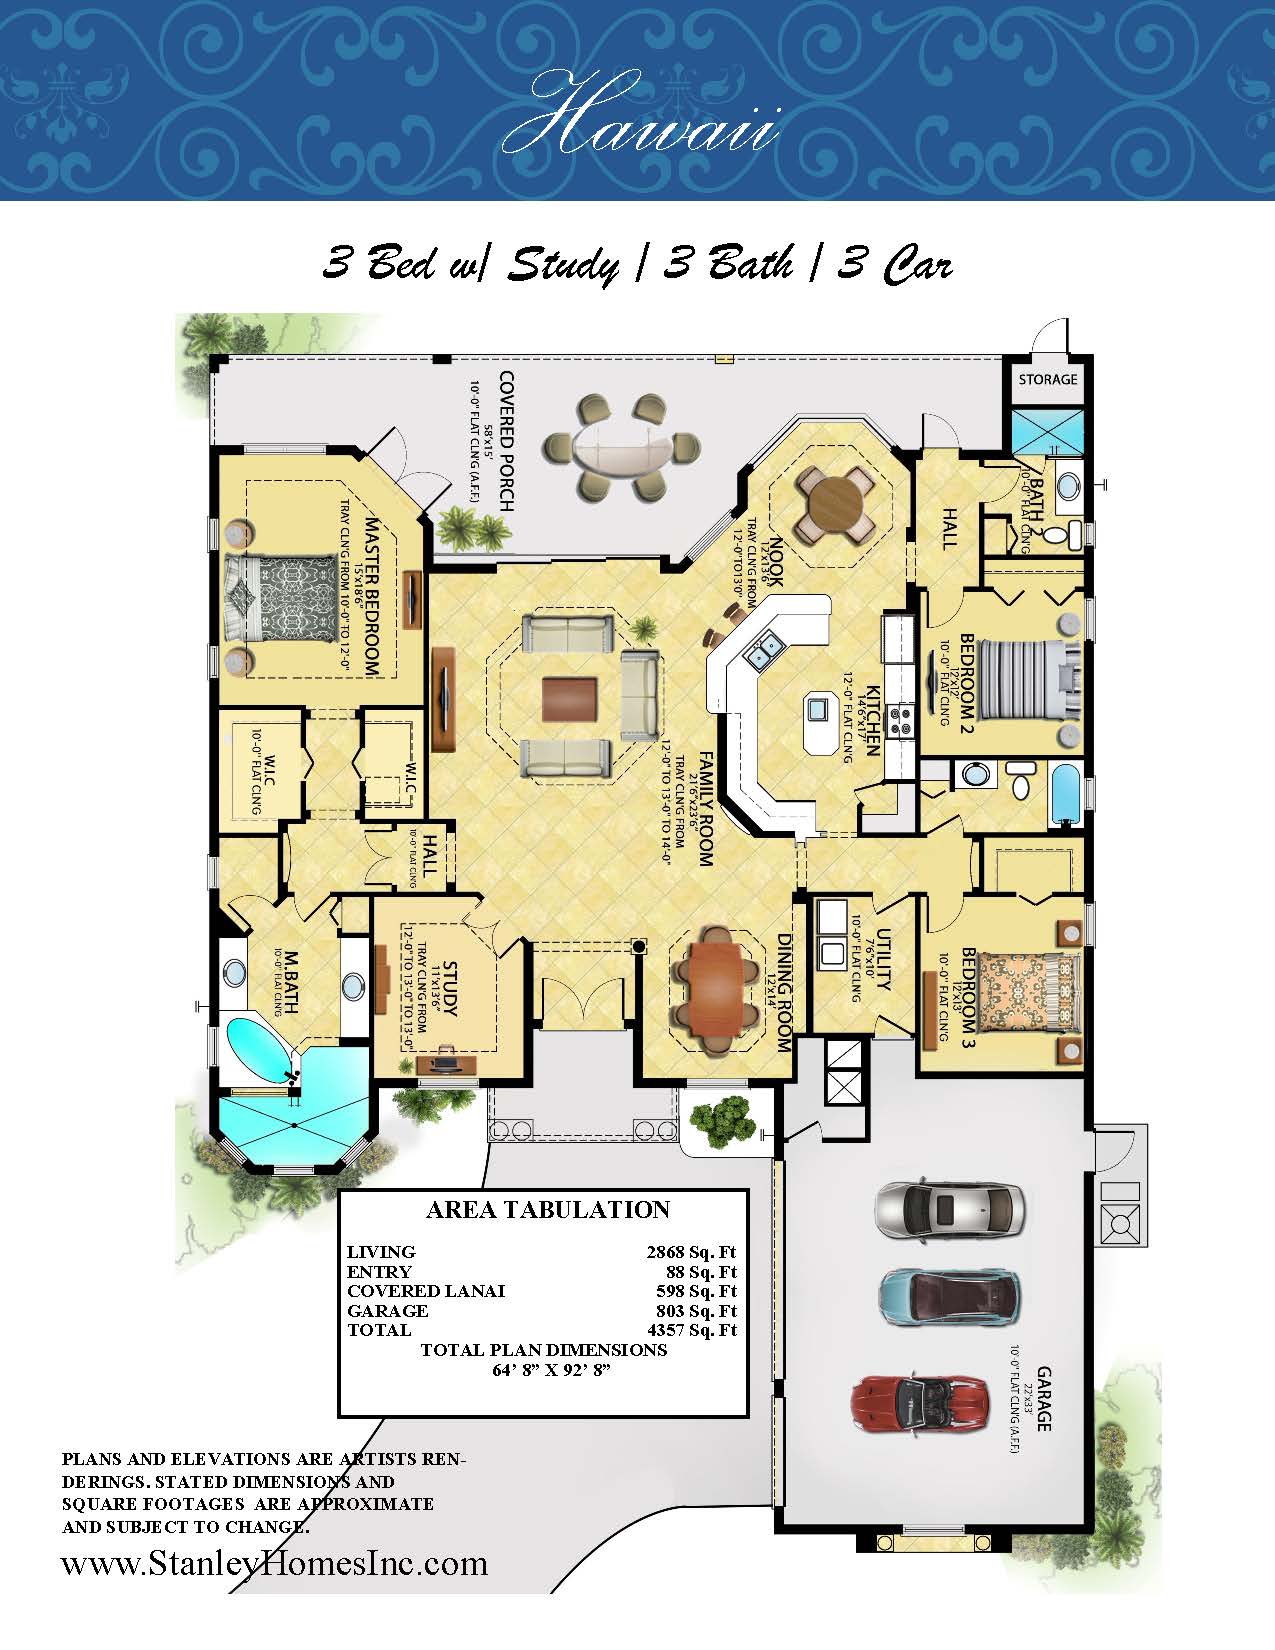 Stanley Homes Hawaii Floor Plan custom home in Viera and Brevard FL